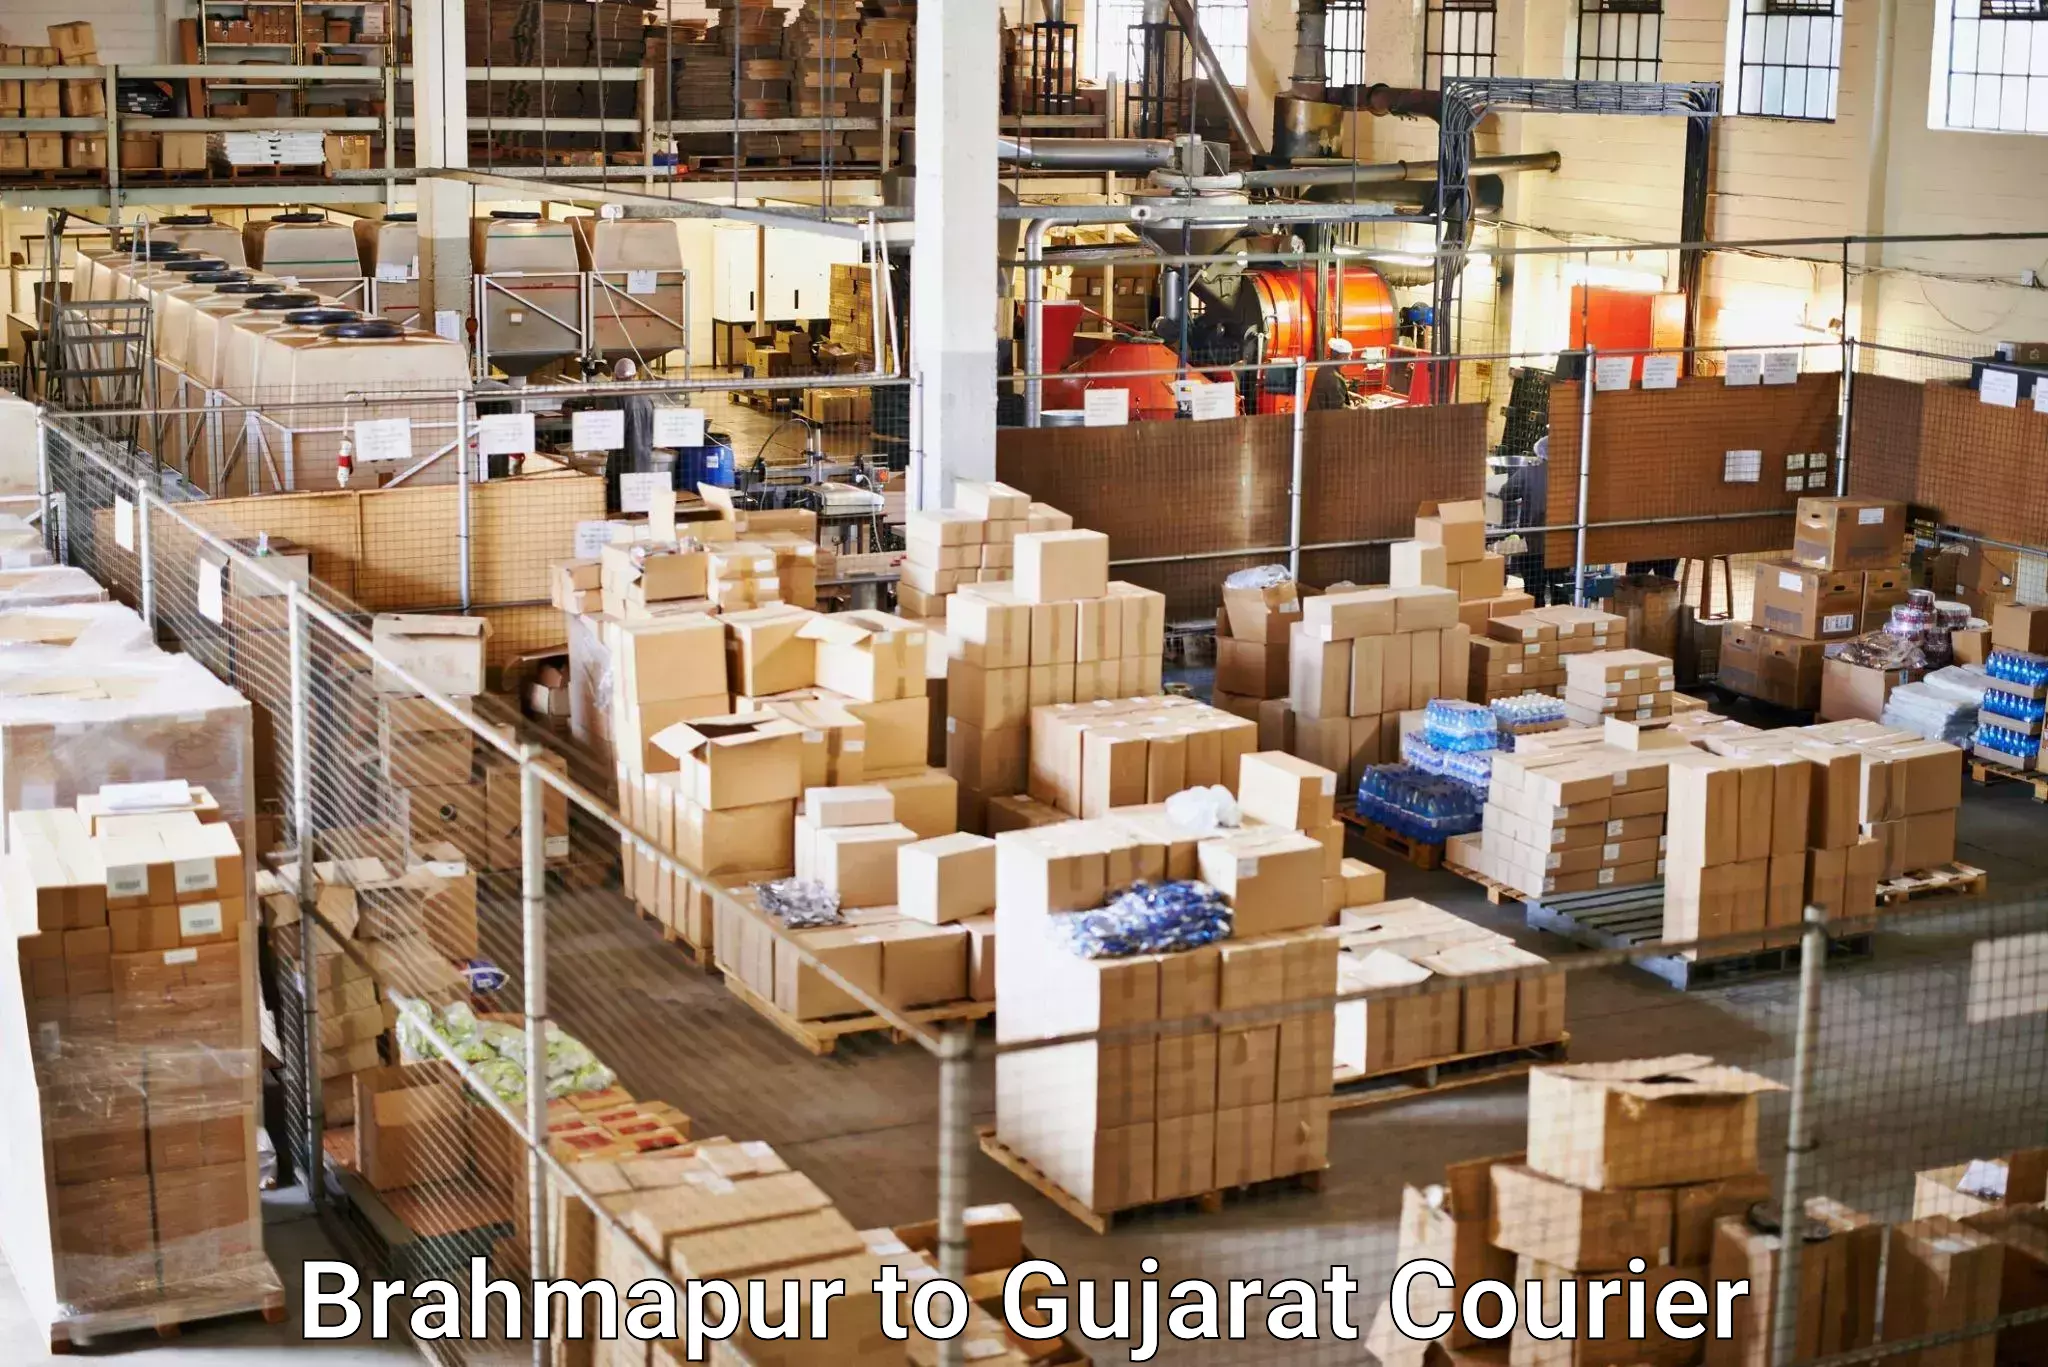 Express shipping in Brahmapur to Chotila